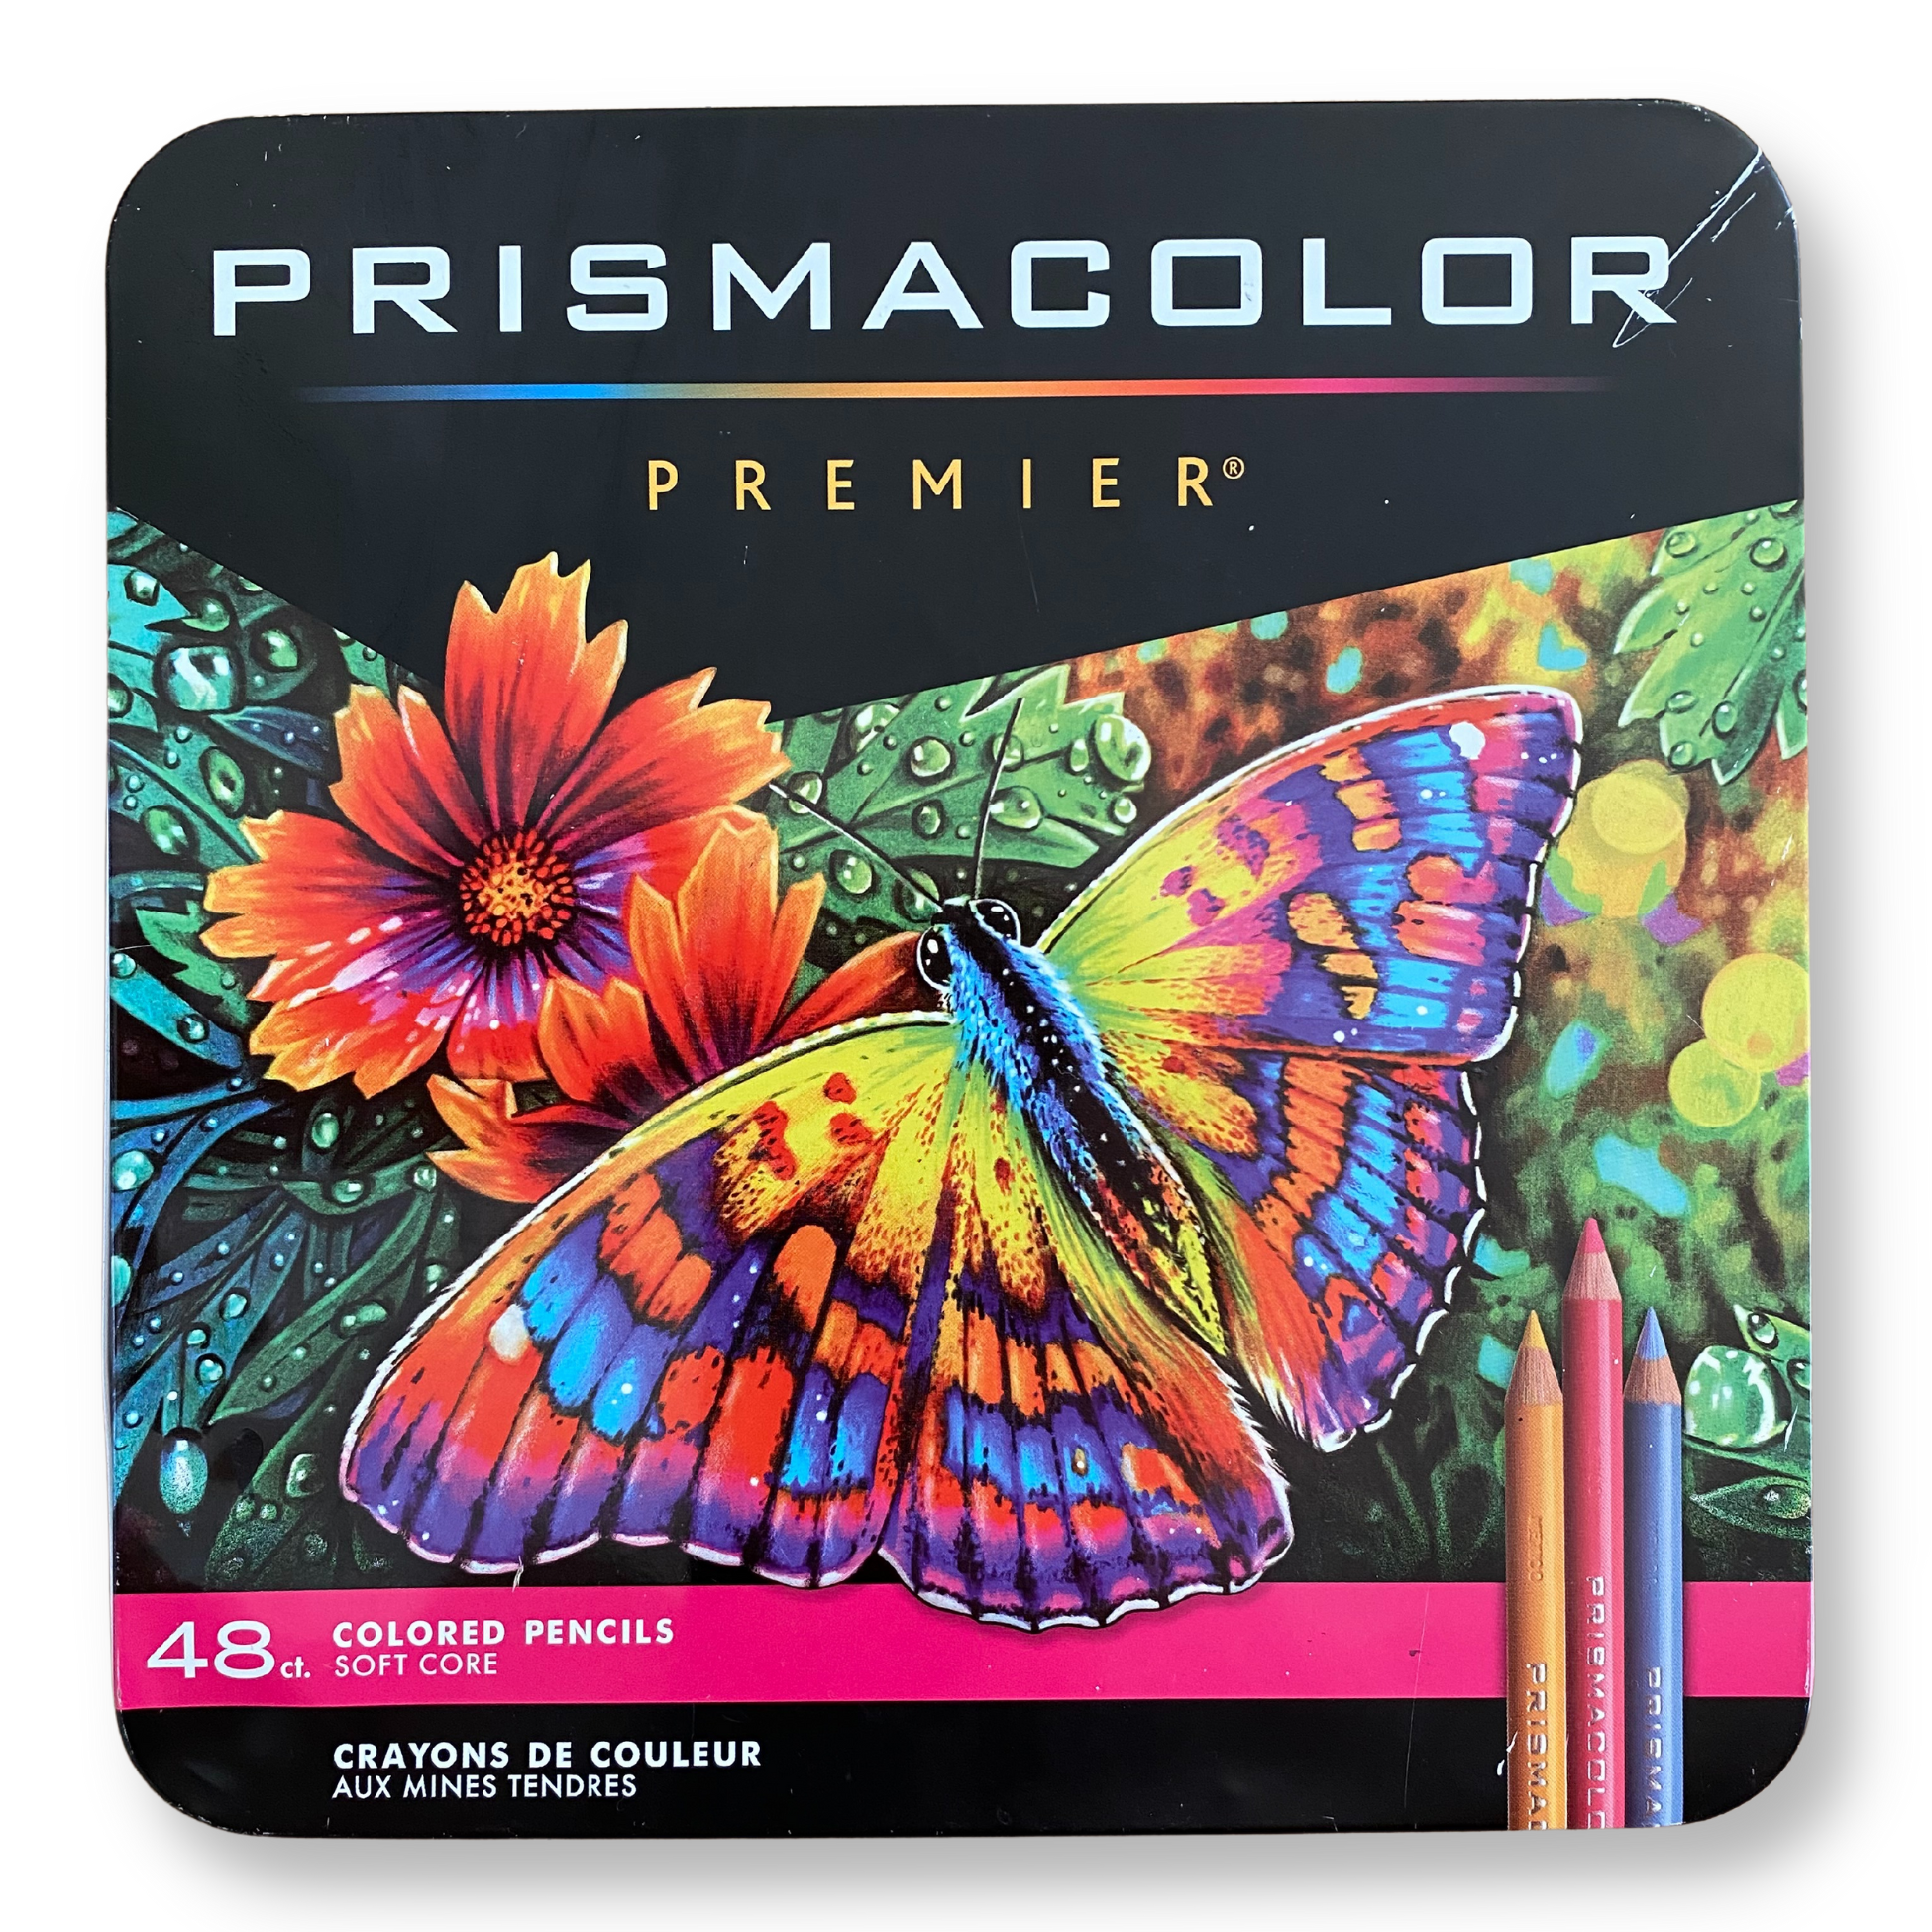 Shop Artisto Premium Watercolor Pencils